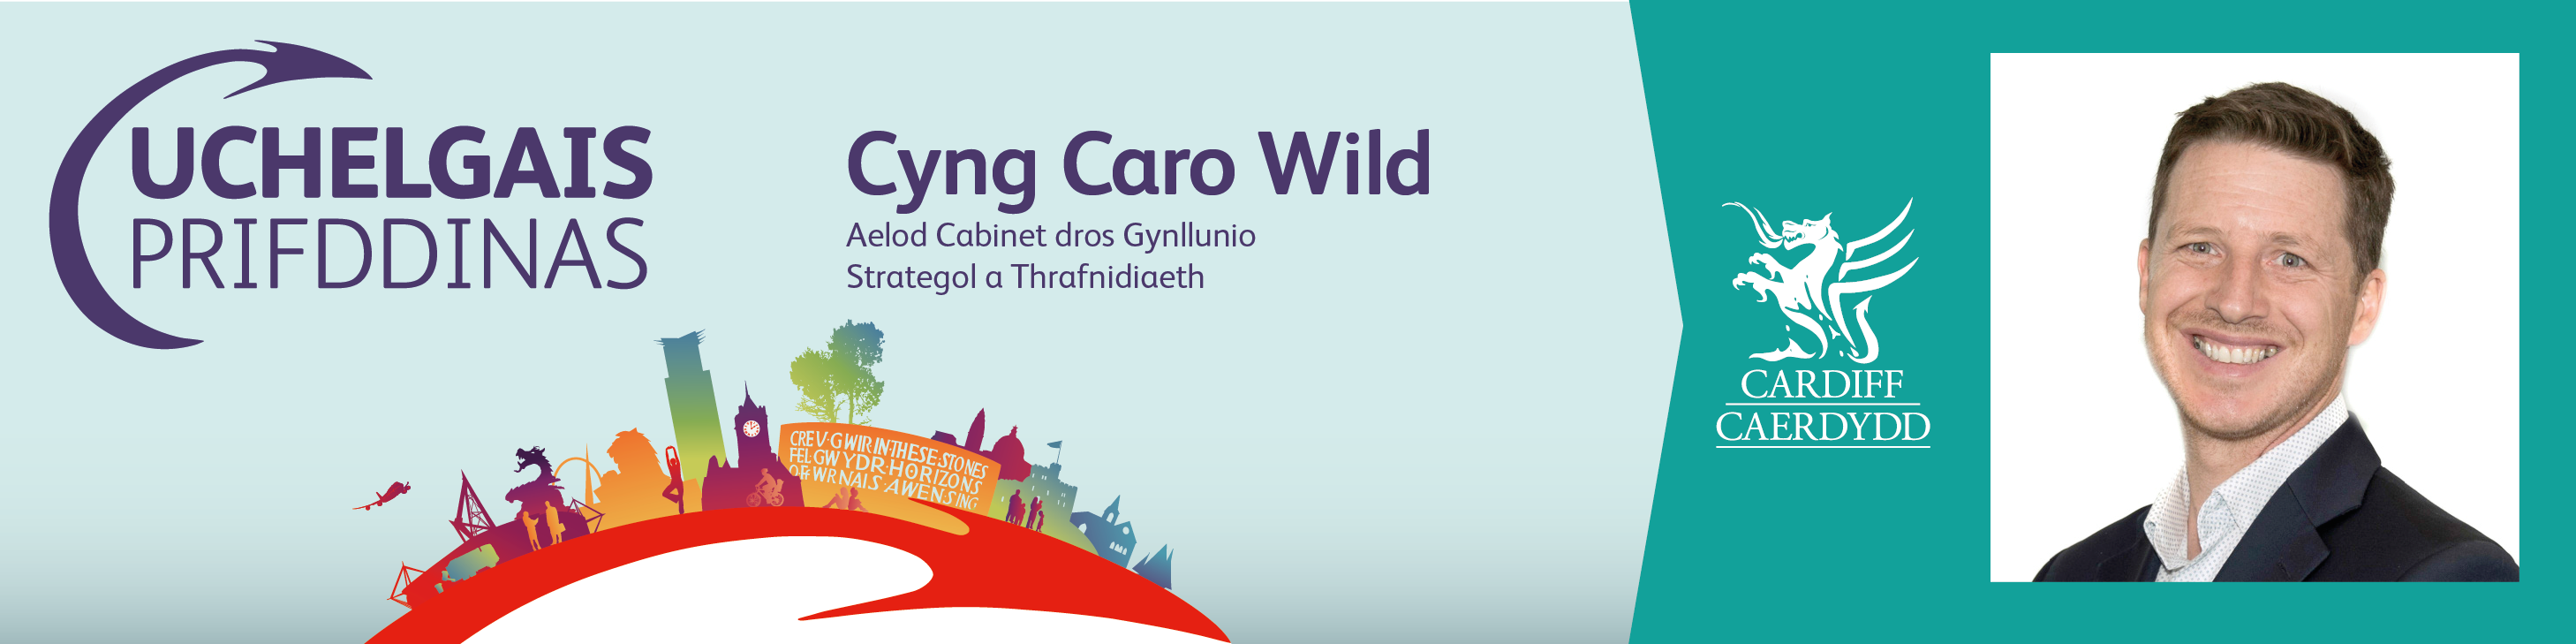 Llun y Gynghorydd Caro Wild a logo Uchelgais Prifddinas Caerdydd